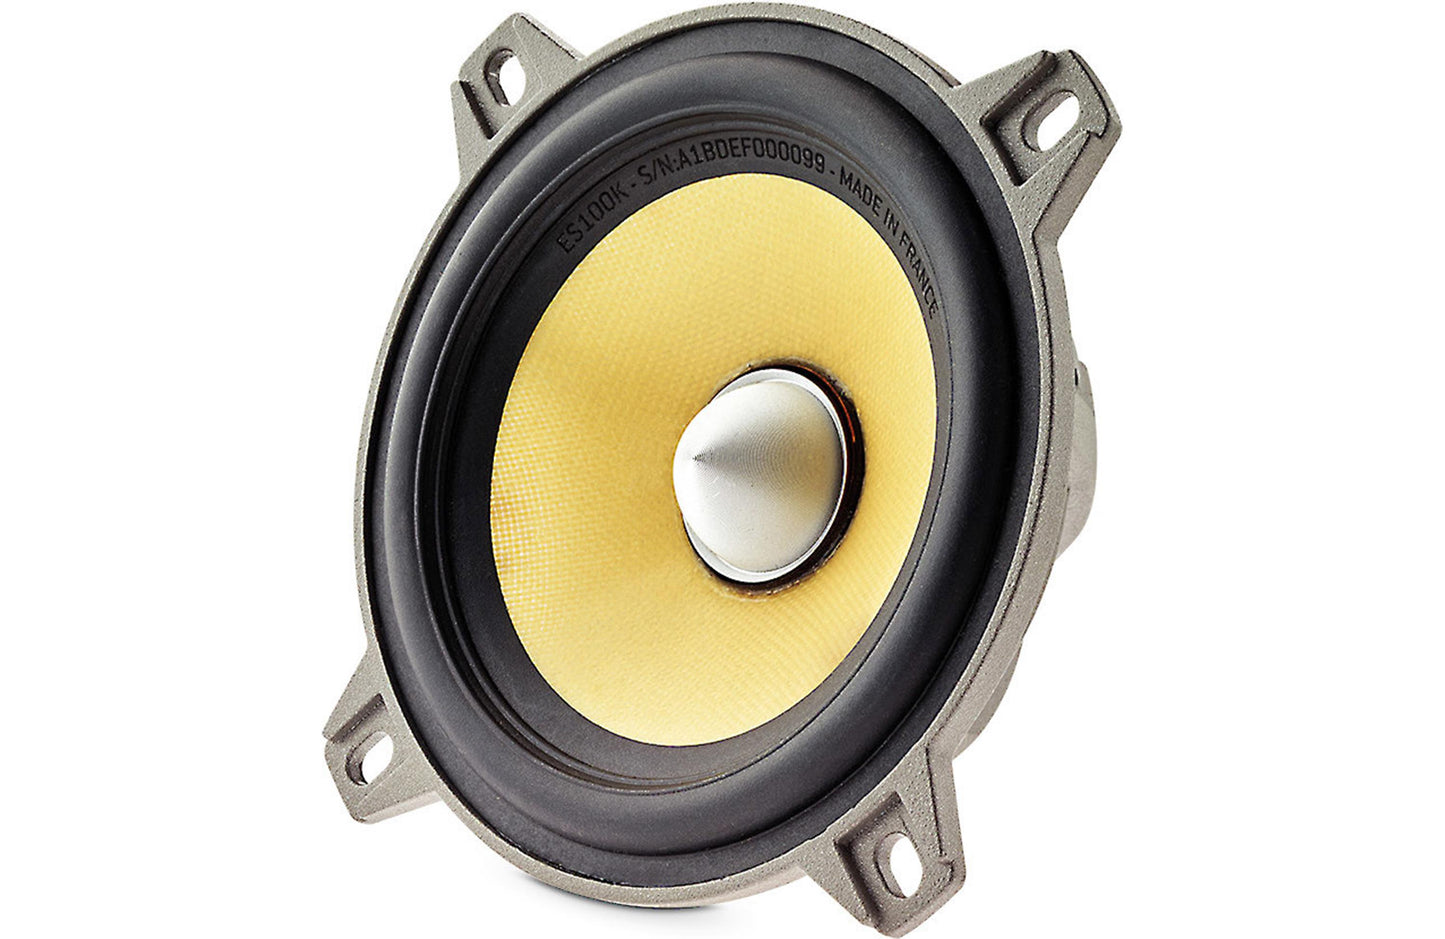 Focal ES 100K K2 Power Series 4" component speaker system